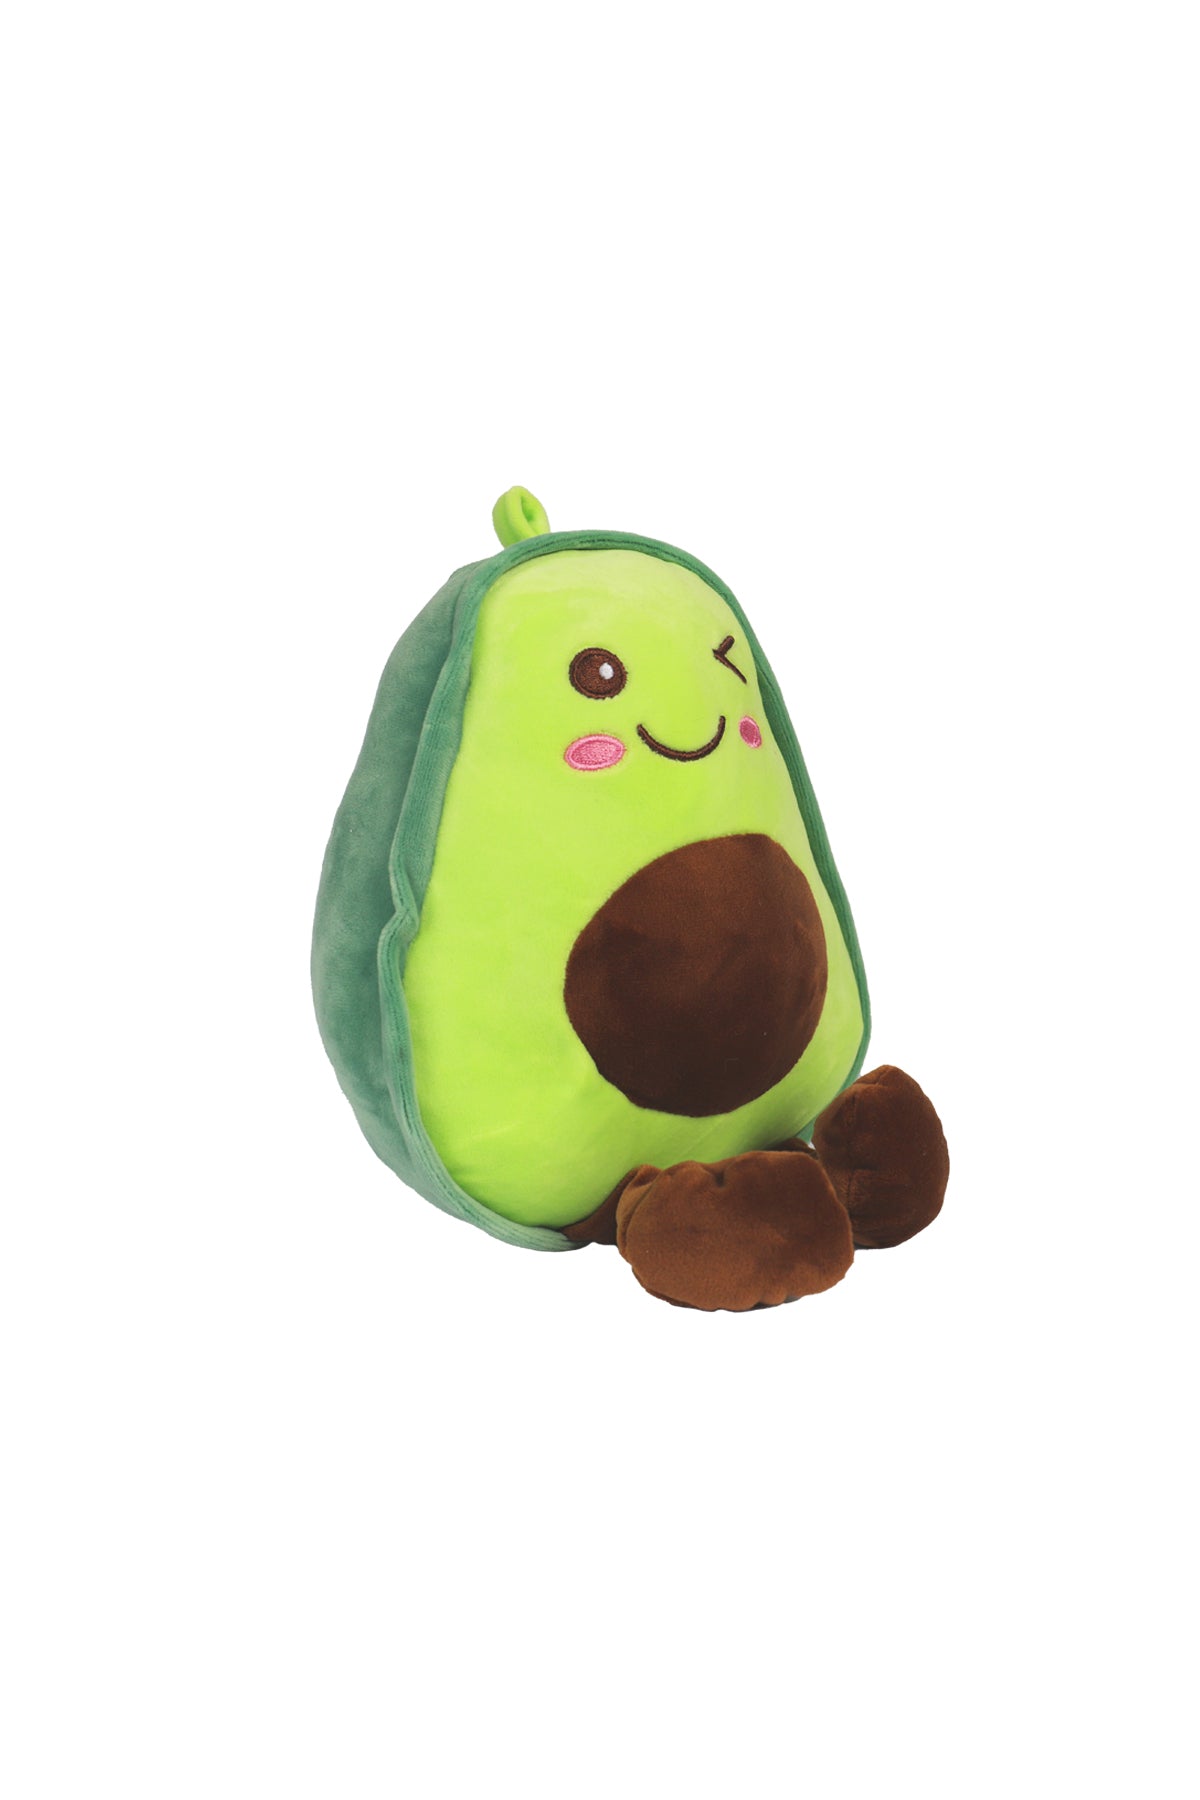 Stuffed Soft Avocado Toy